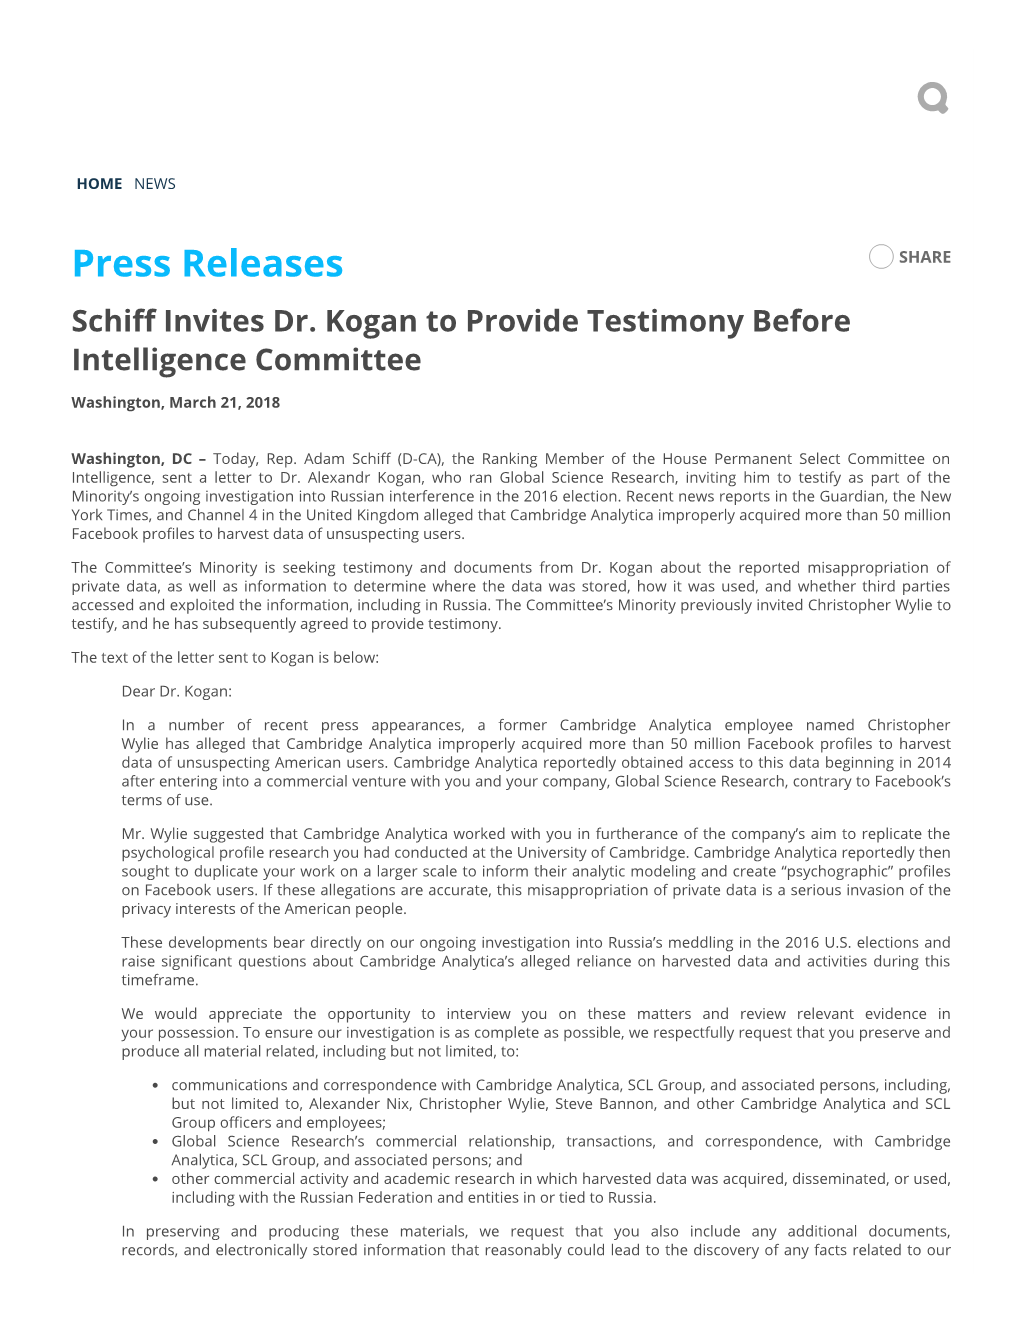 Press Releases SHARE Schi� Invites Dr